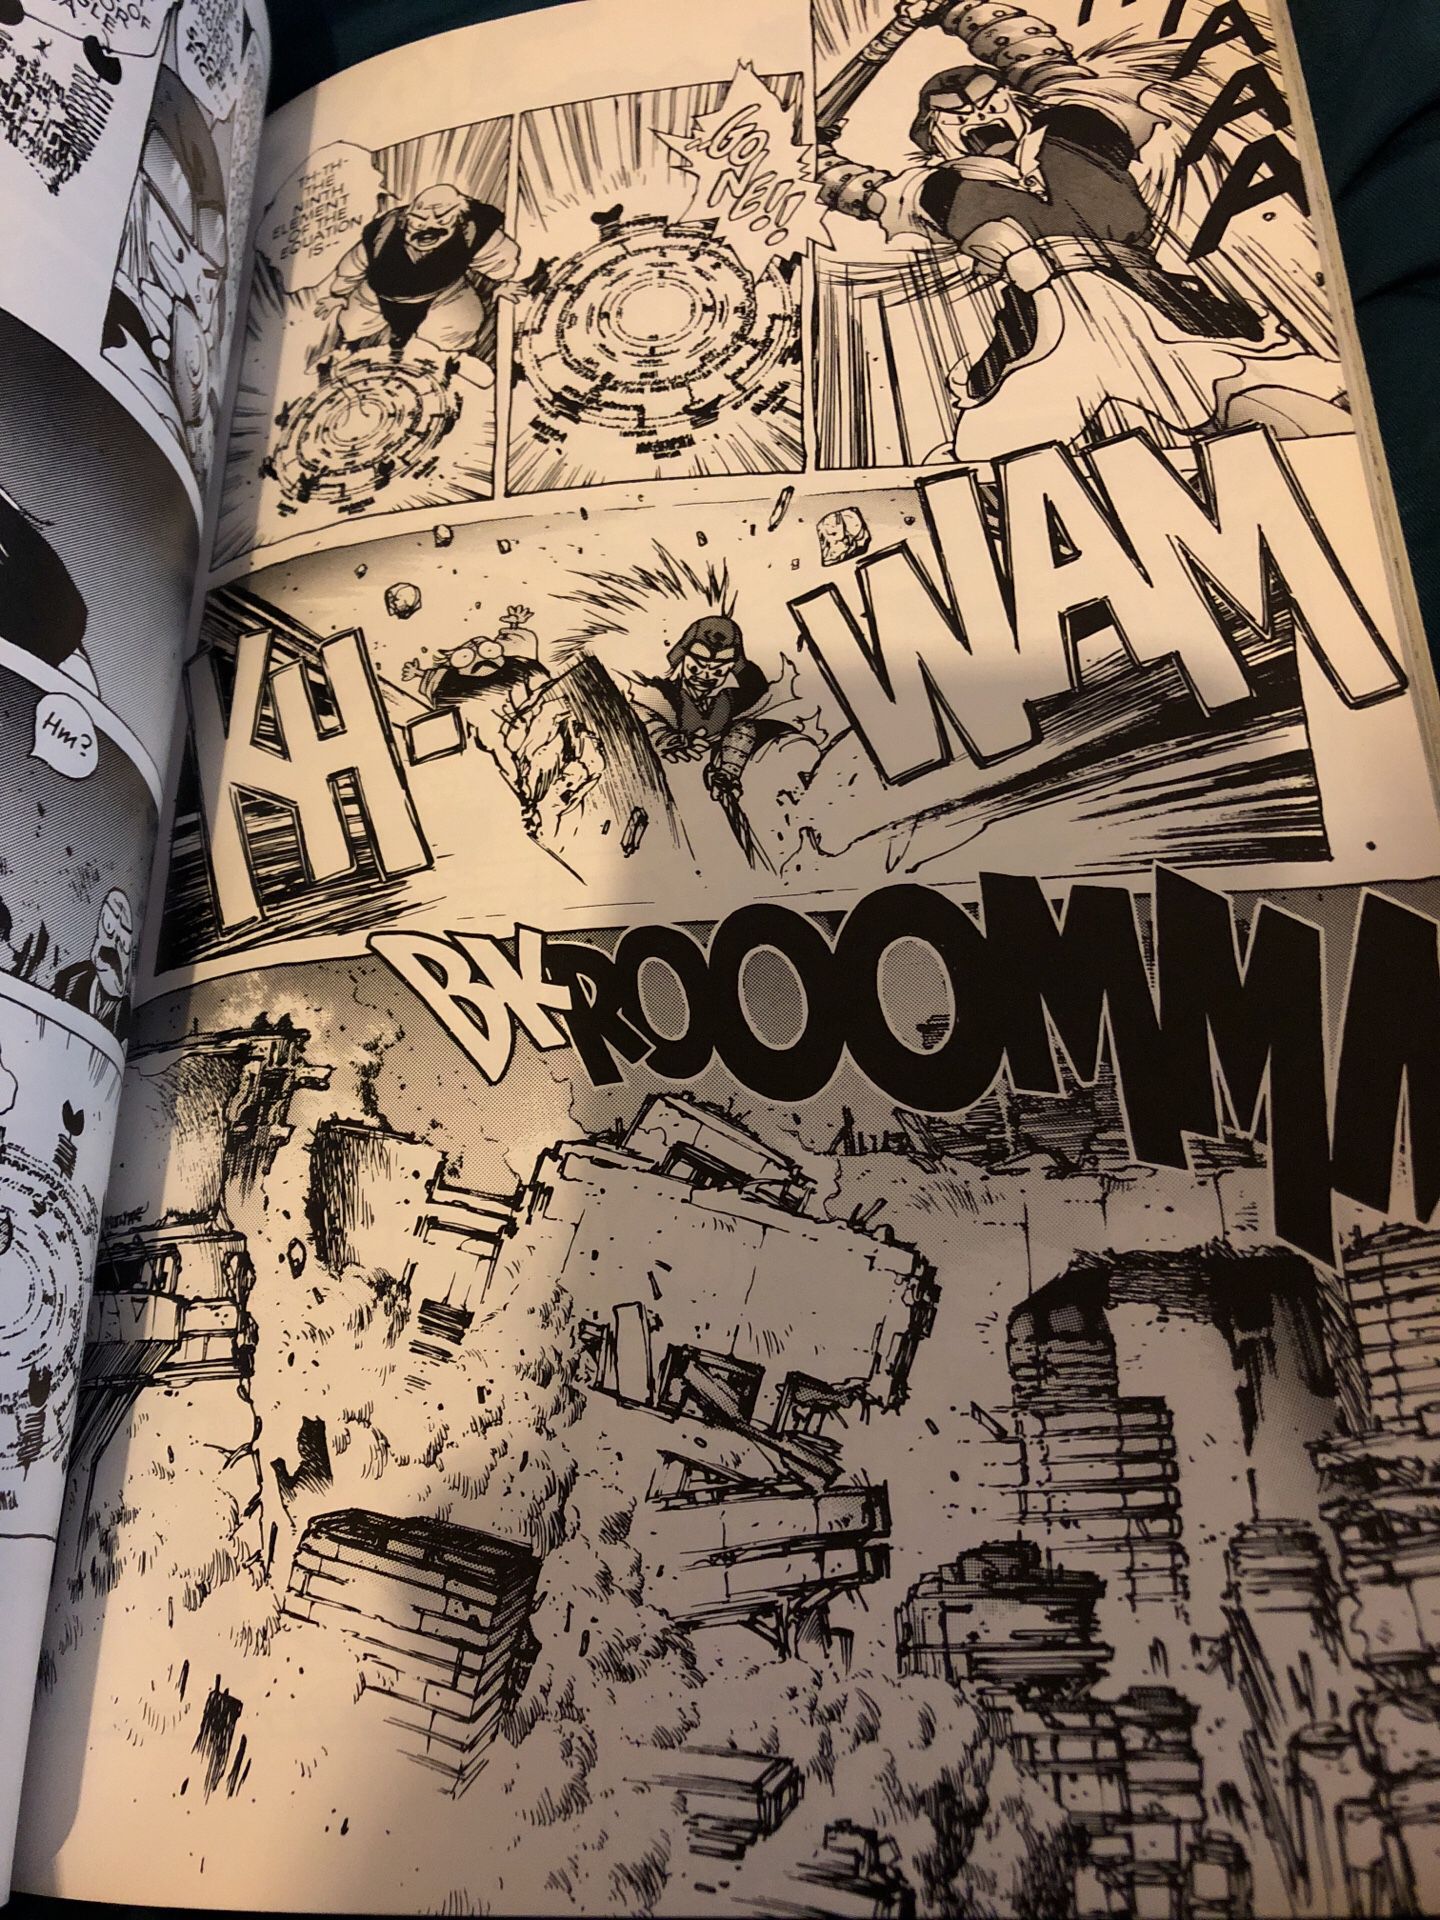 Masamune Shirow Manga Anime Orion Encadernado Completo